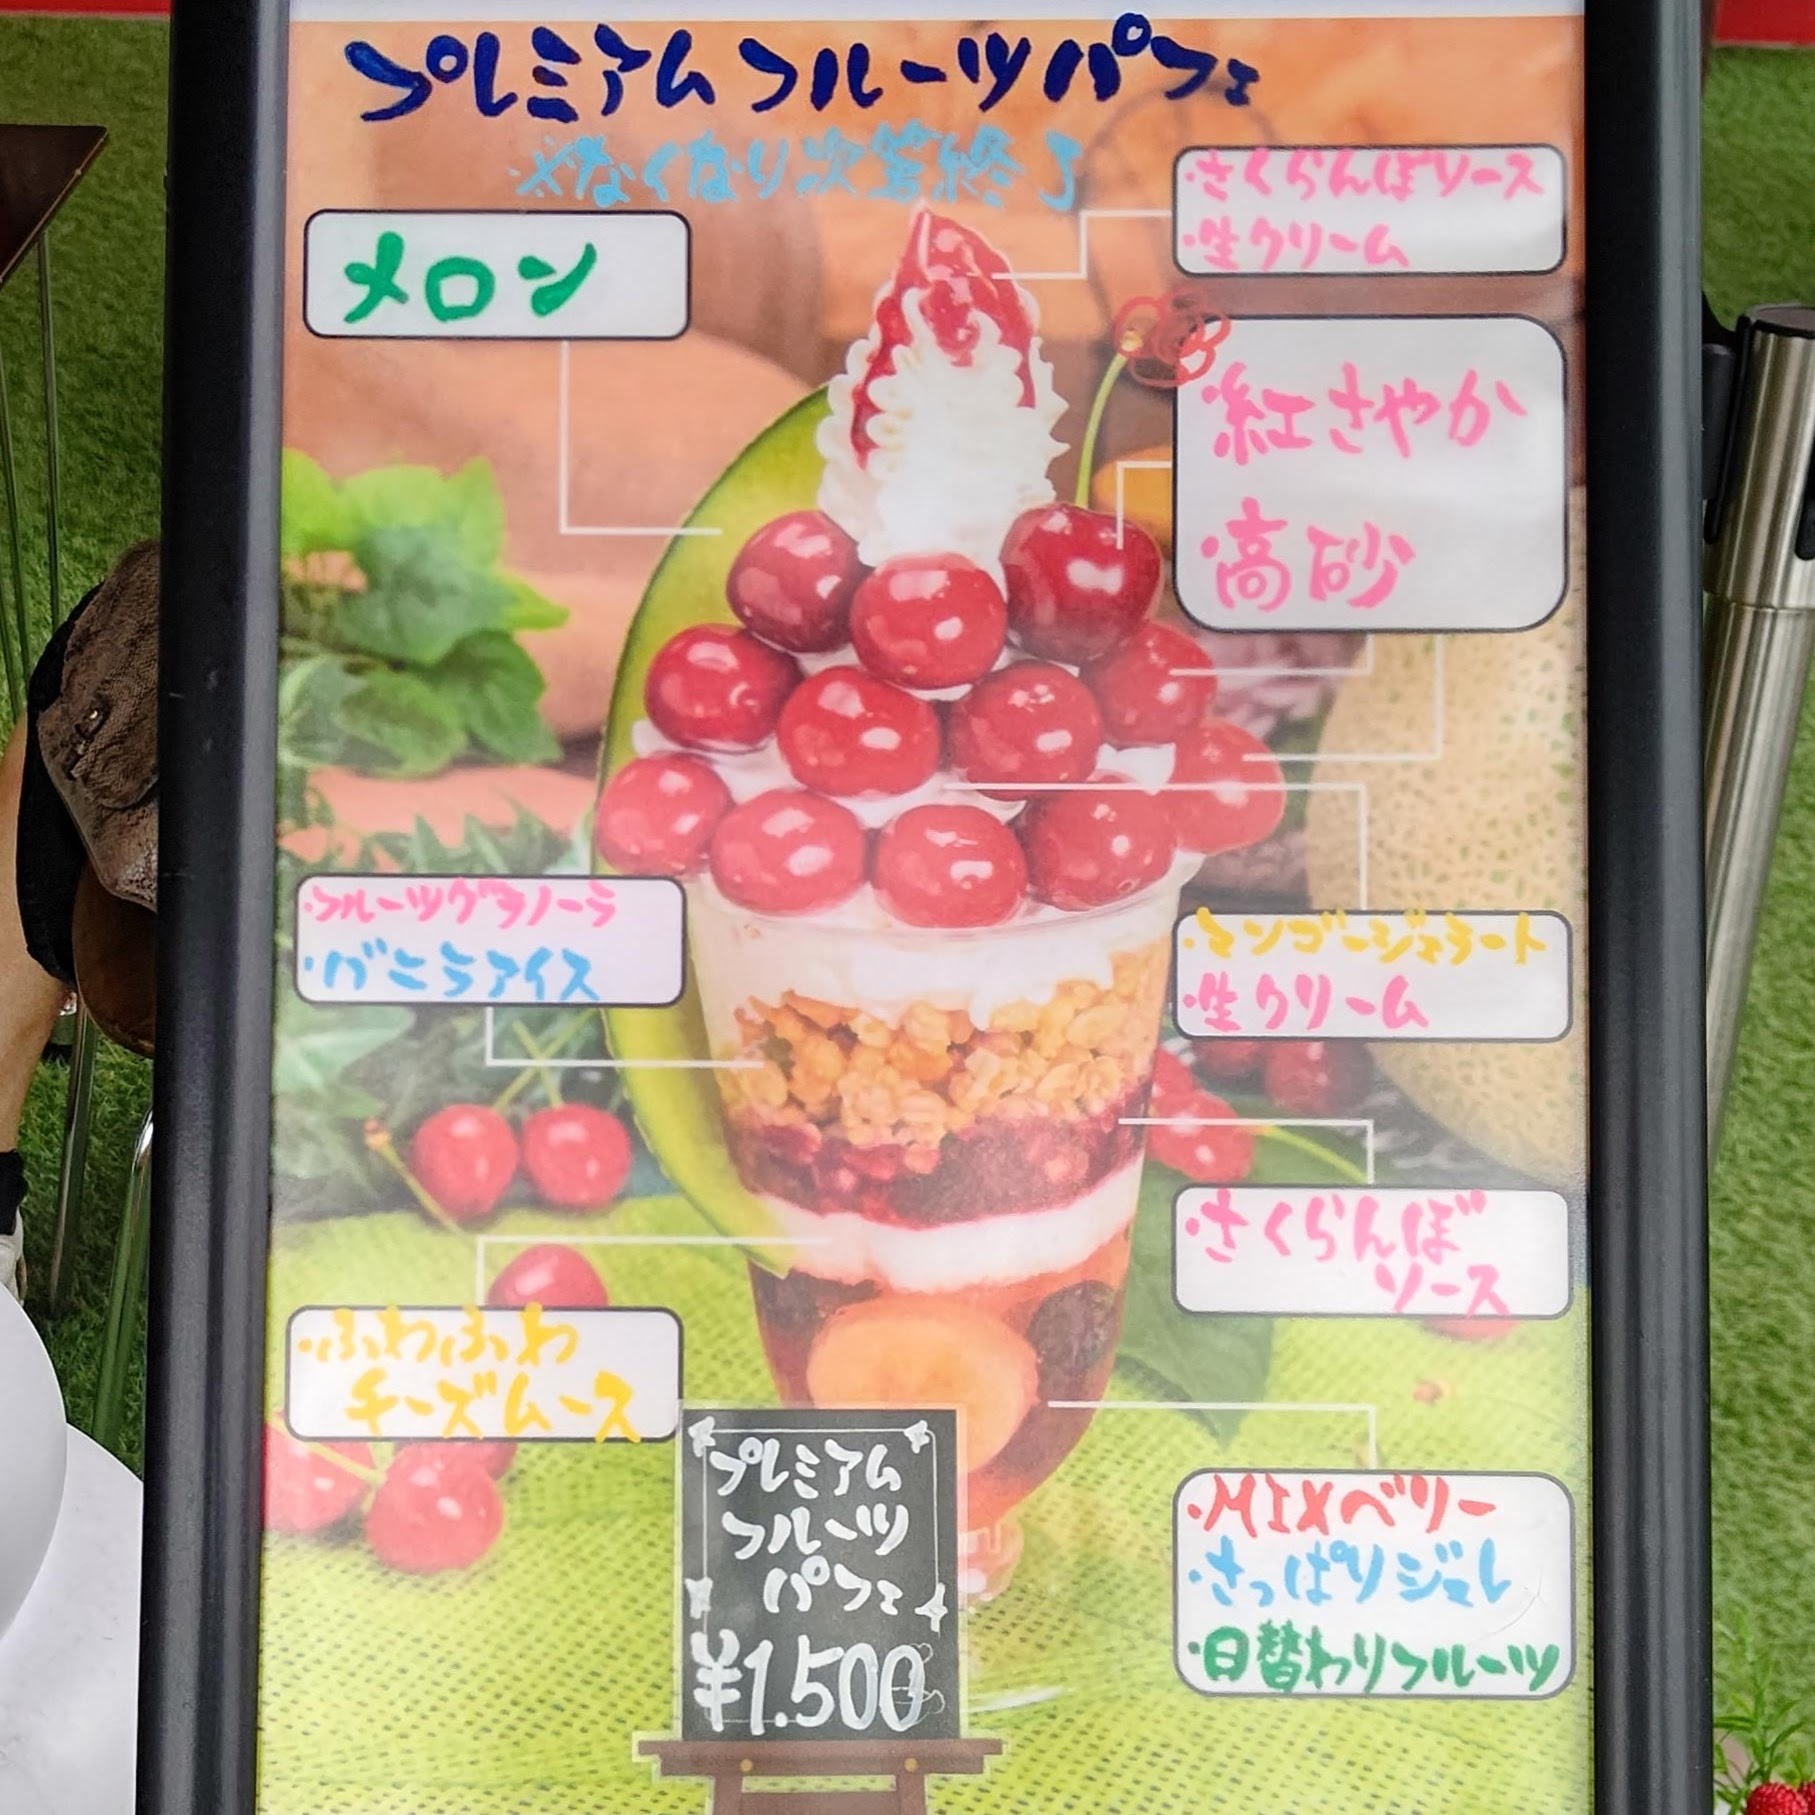 山形県天童市 ナカノフルーツ 仲野観光果樹園 Fruits Cafe Rulave プレミアムフルーツパフェ